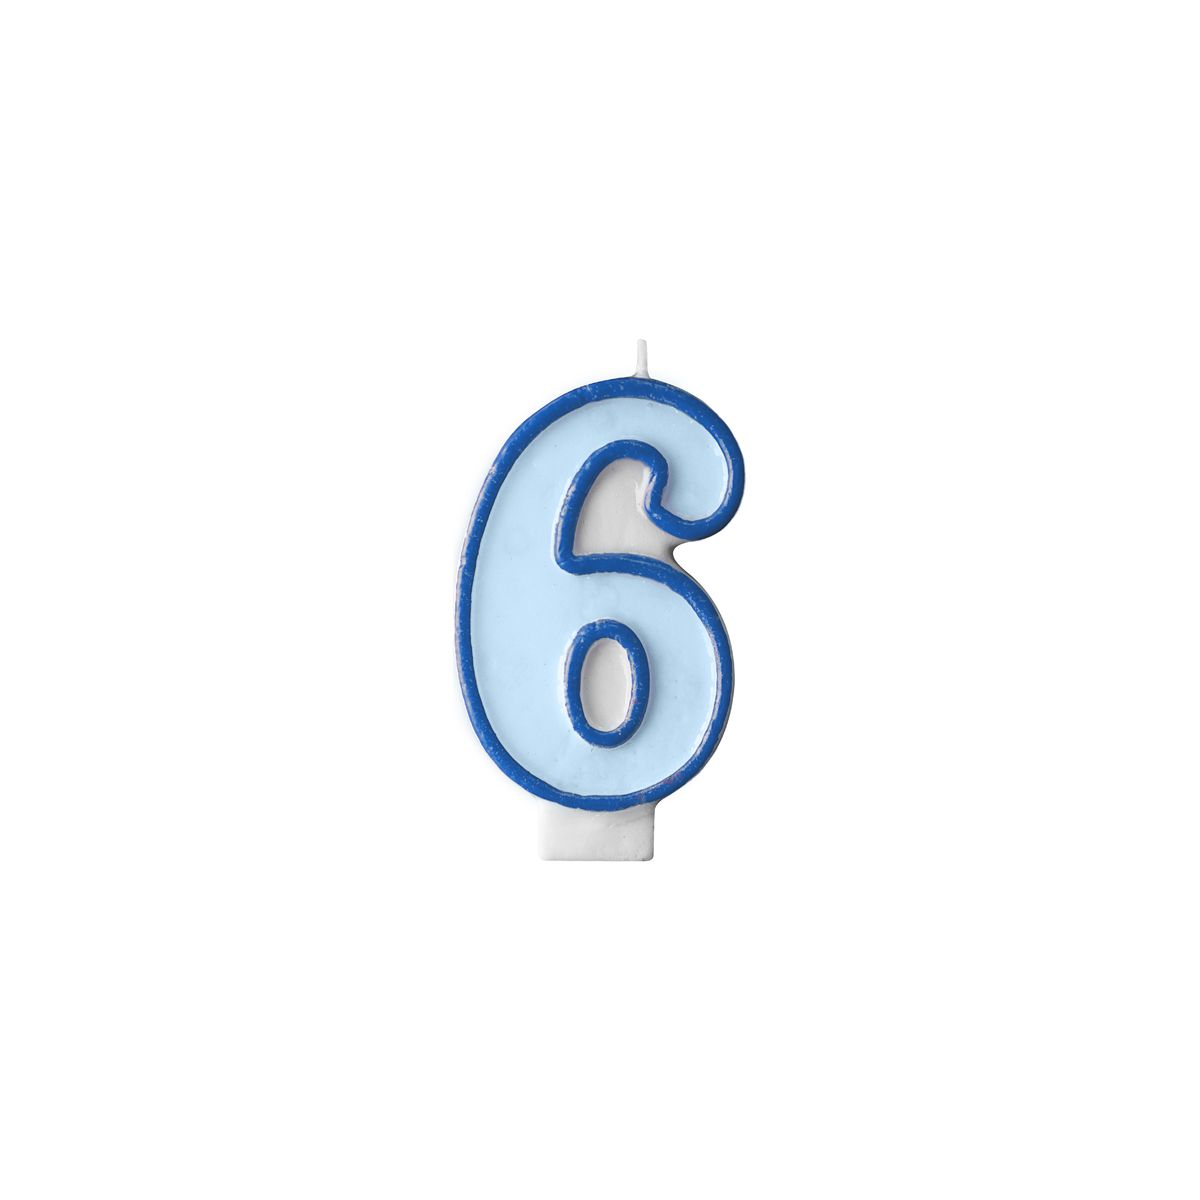 Świeczka urodzinowa Cyferka 6 w kolorze niebieskim 7 centymetrów Partydeco (SCU1-6-001)